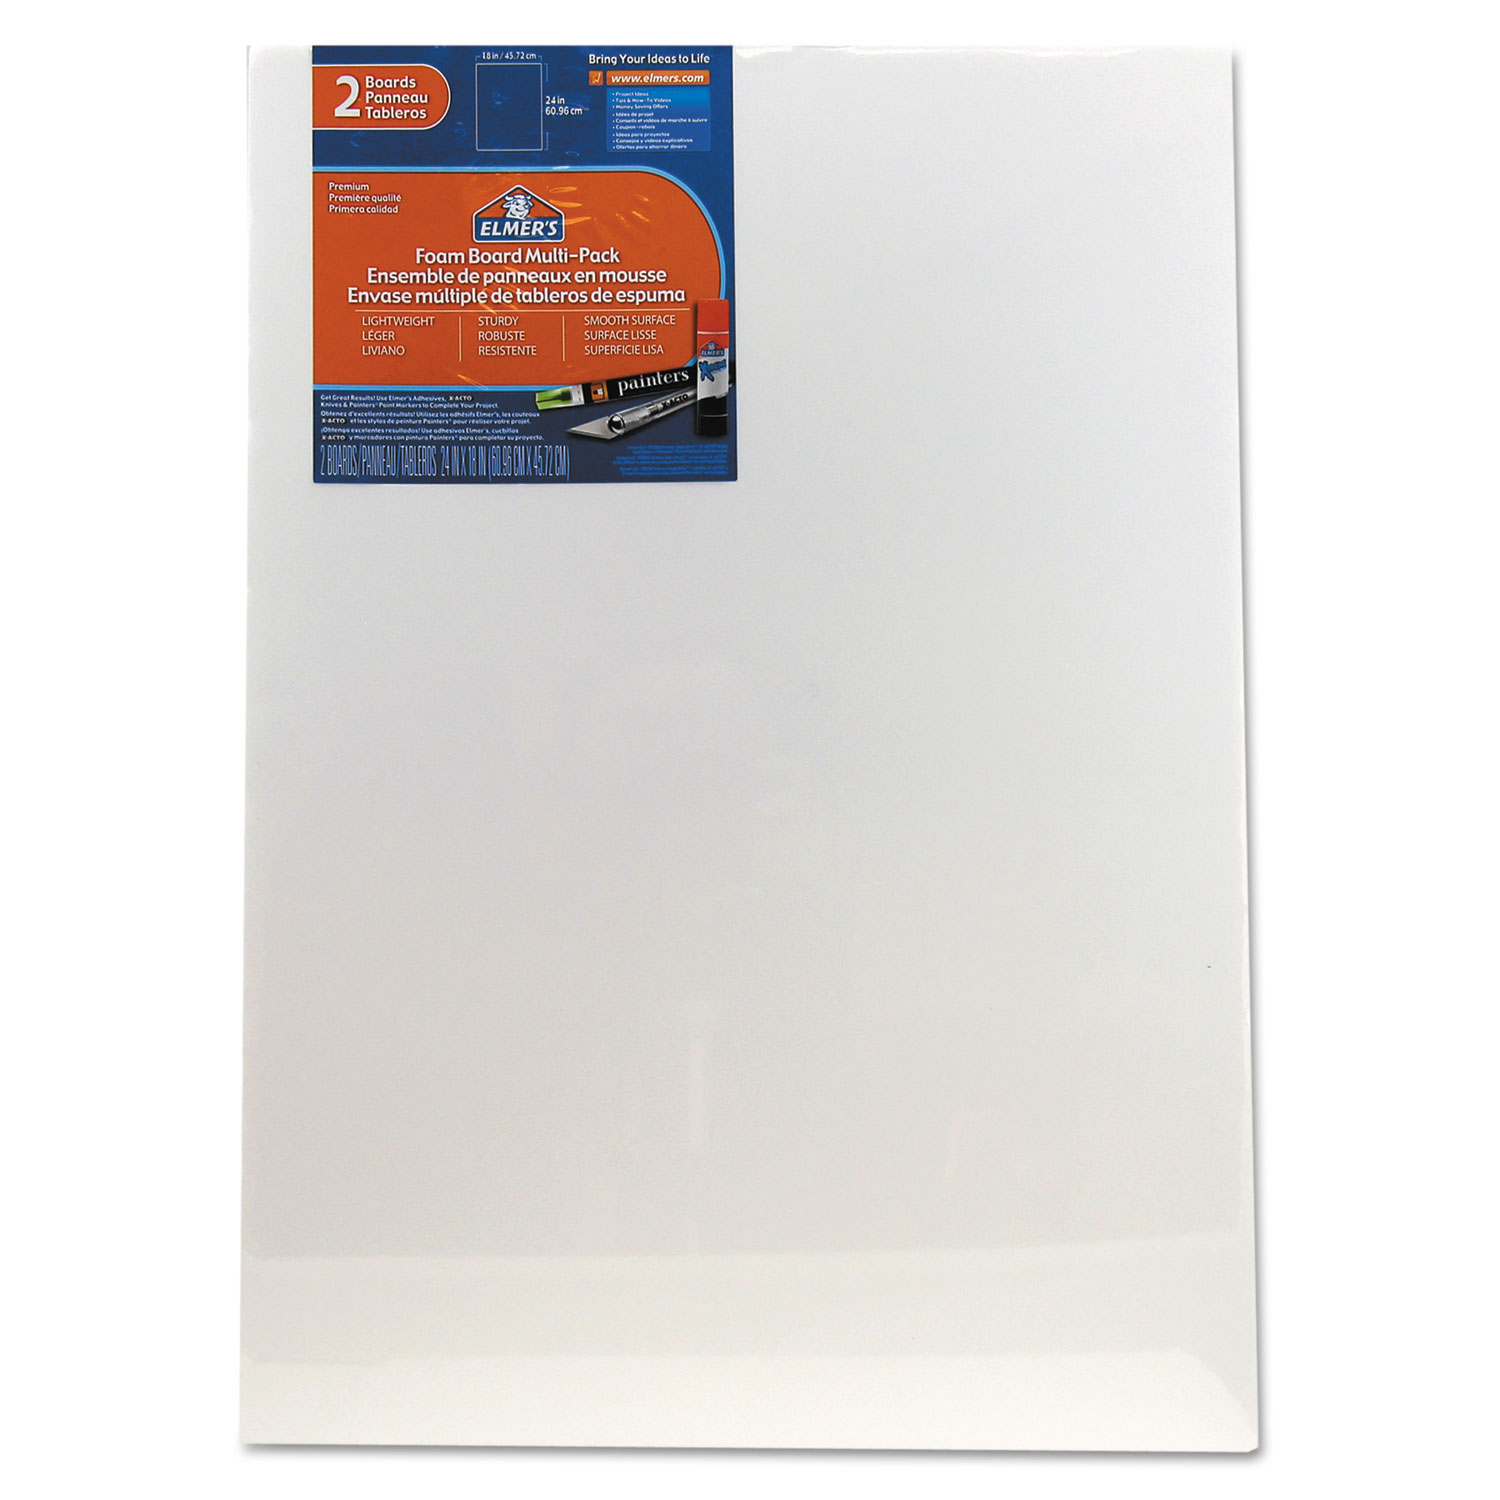 White Pre-Cut Foam Board Multi-Packs, 18 x 24, 2/PK